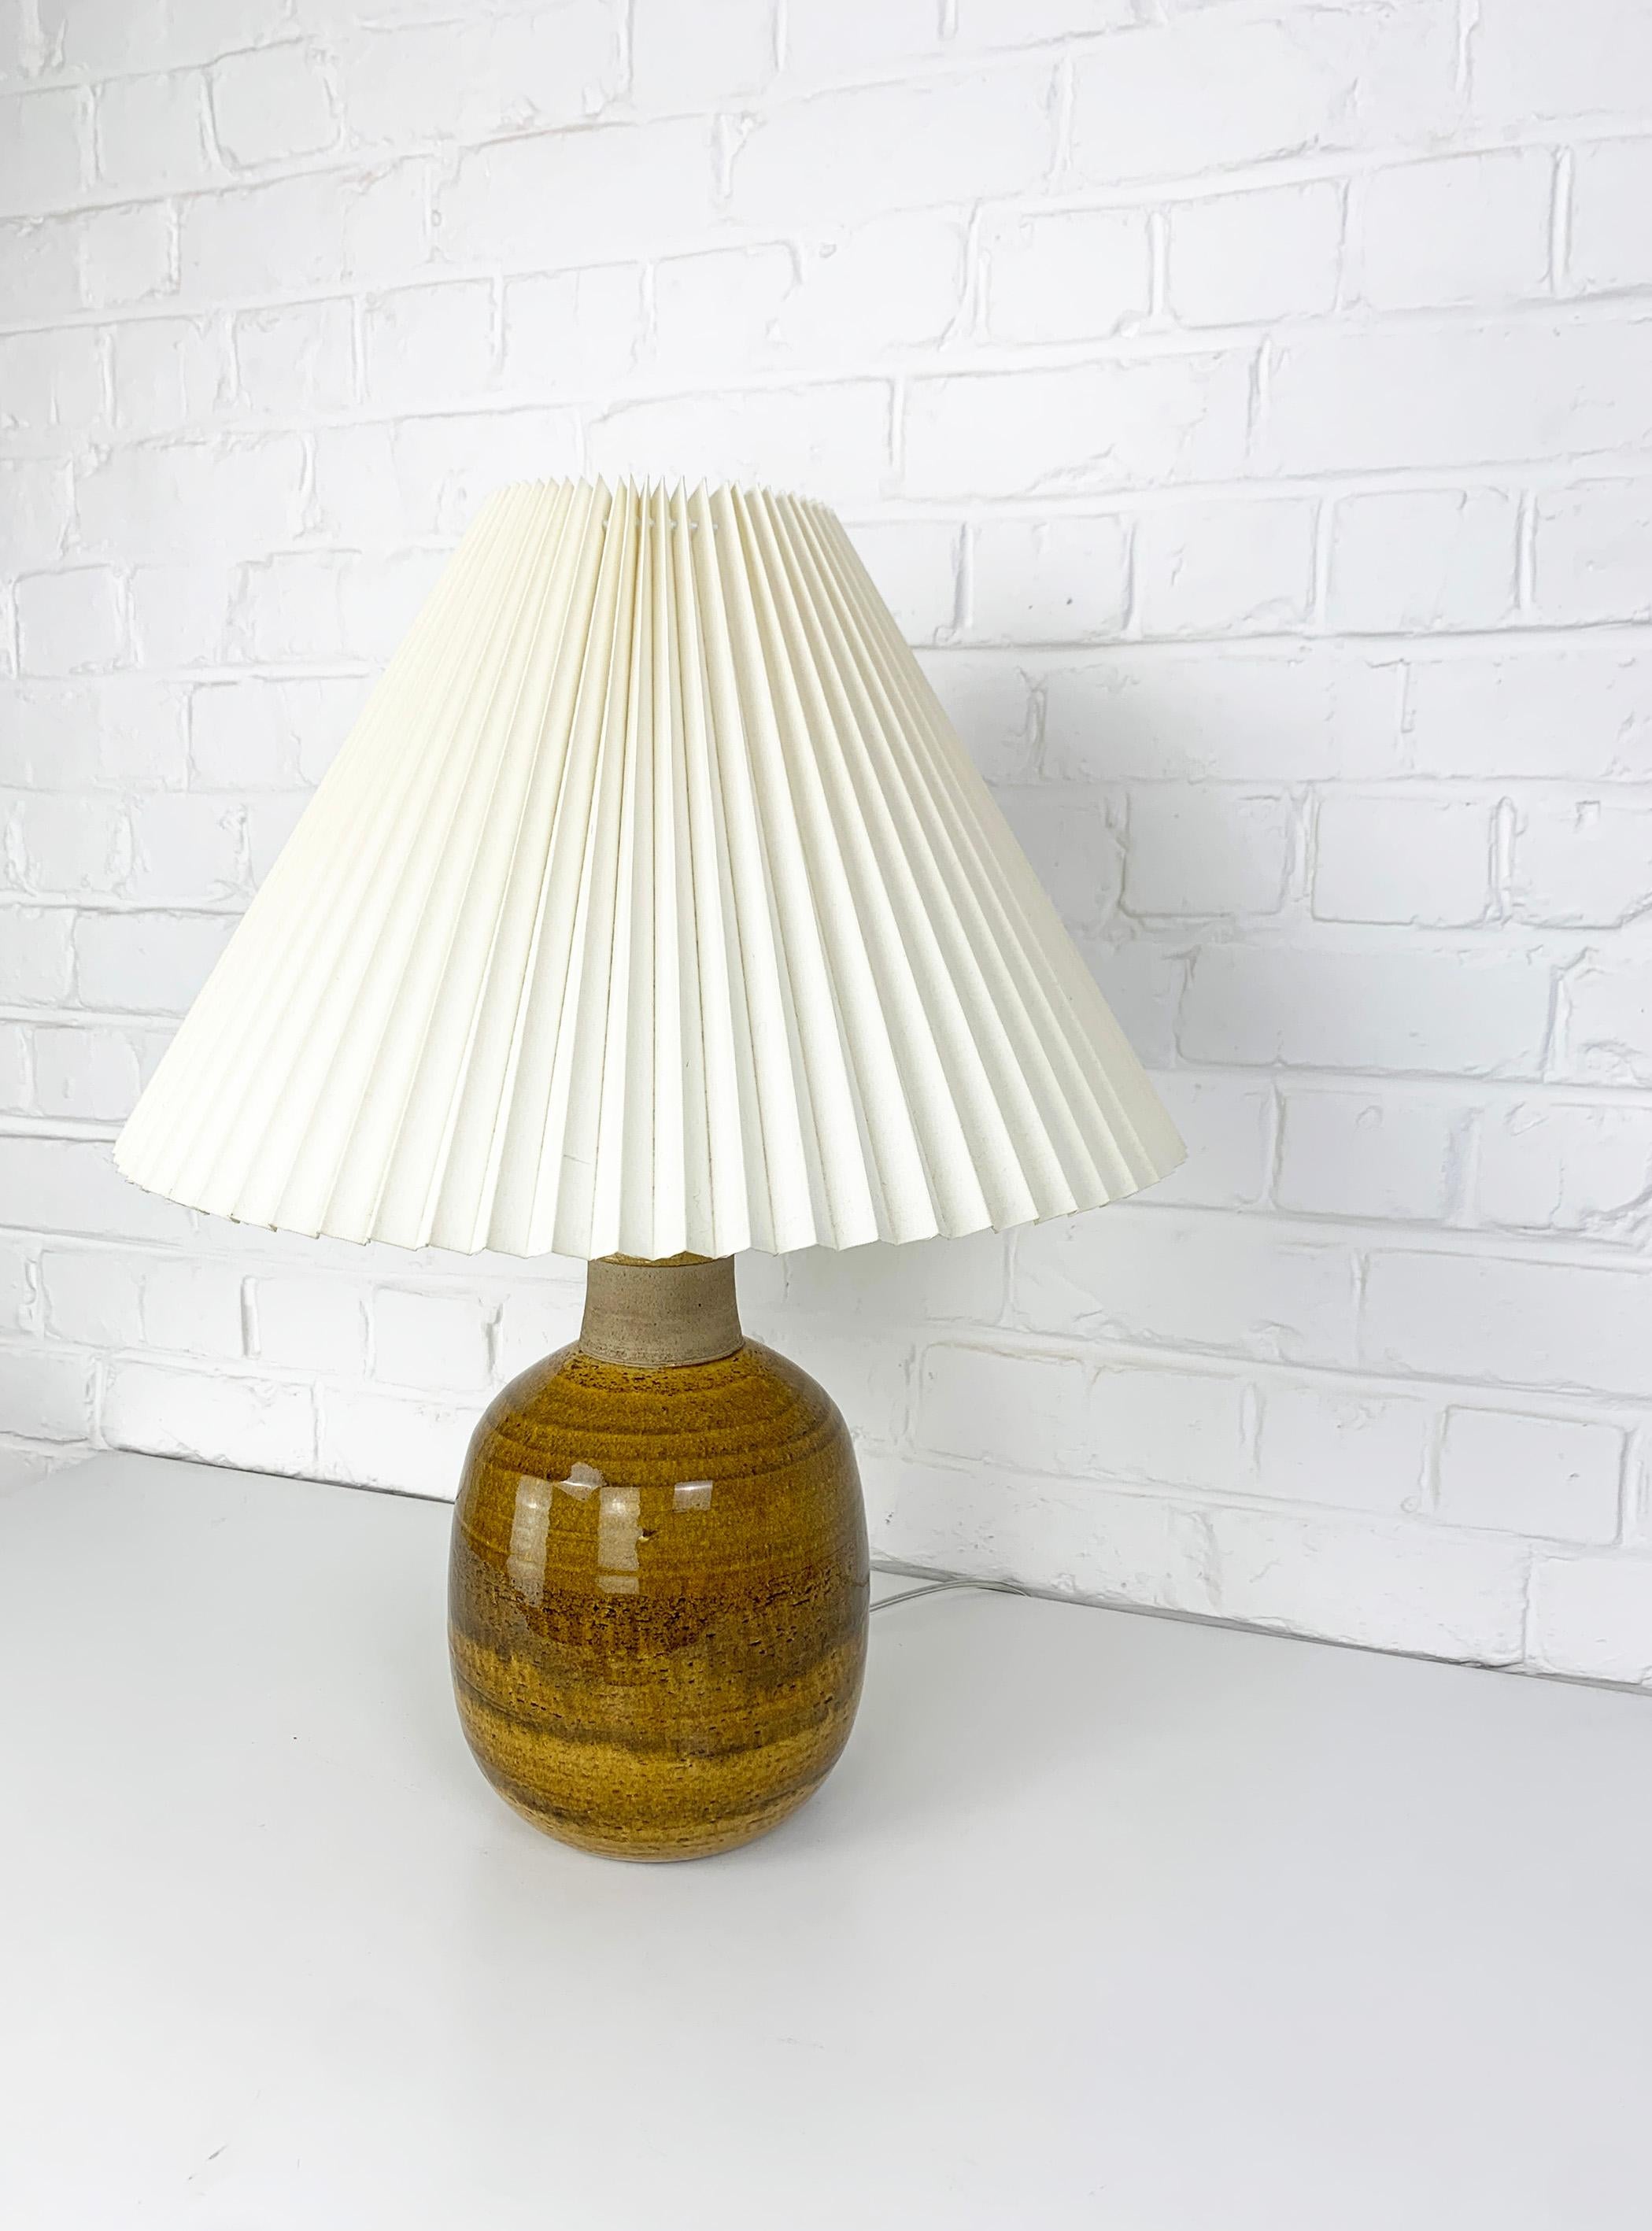 Large Danish Ceramic Table Lamp, Stoneware, Nils Kähler for HAK, Denmark 1960s For Sale 2